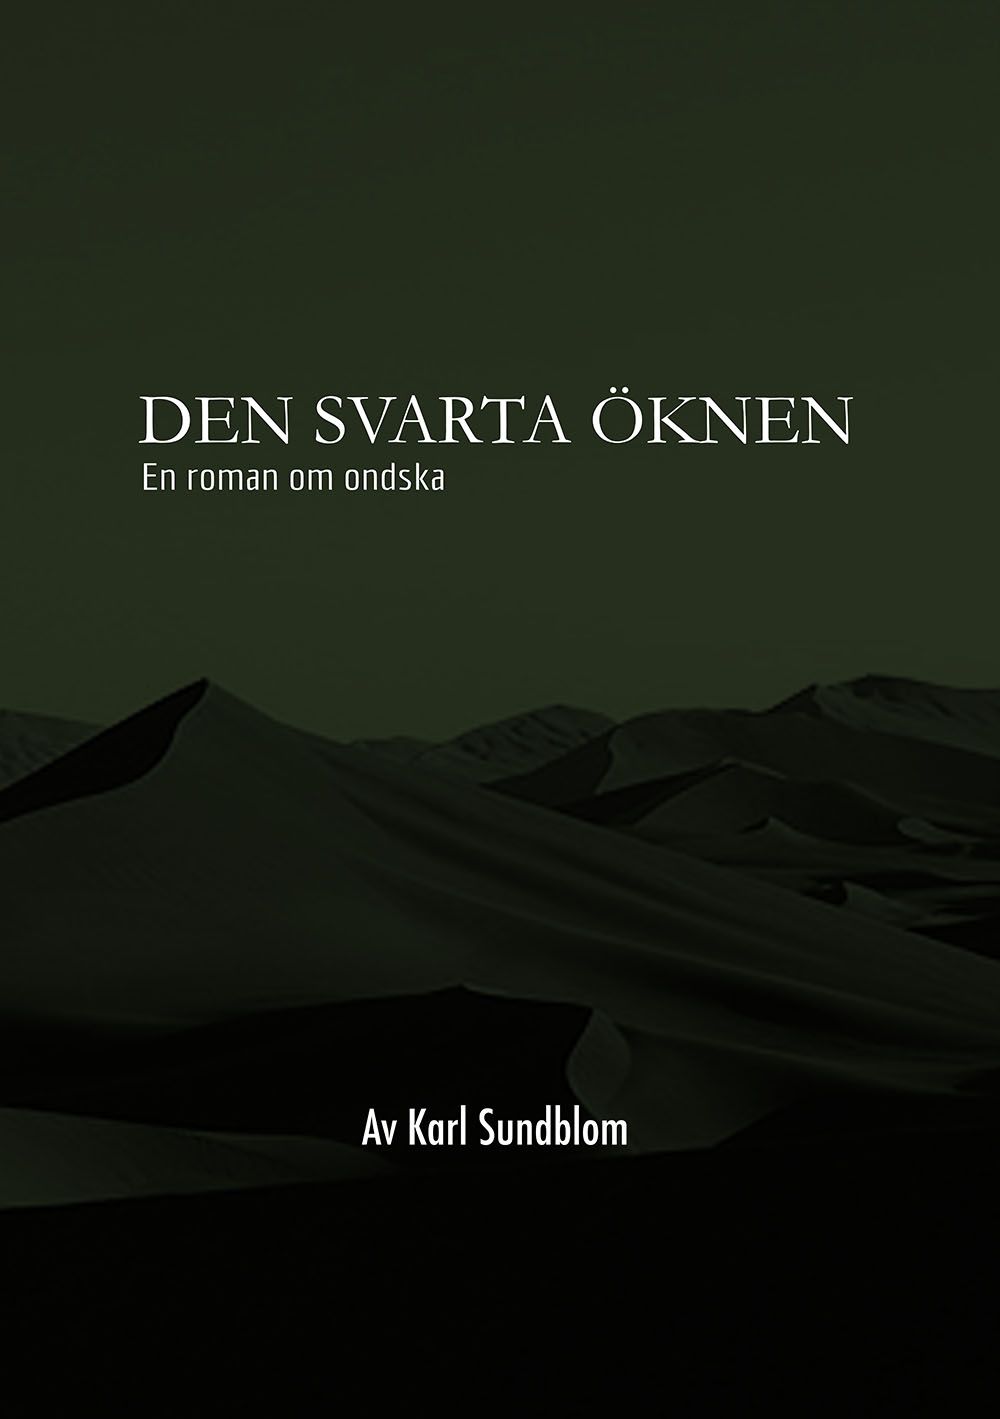 DEN SVARTA ÖKNEN, eBook by Karl Sundblom